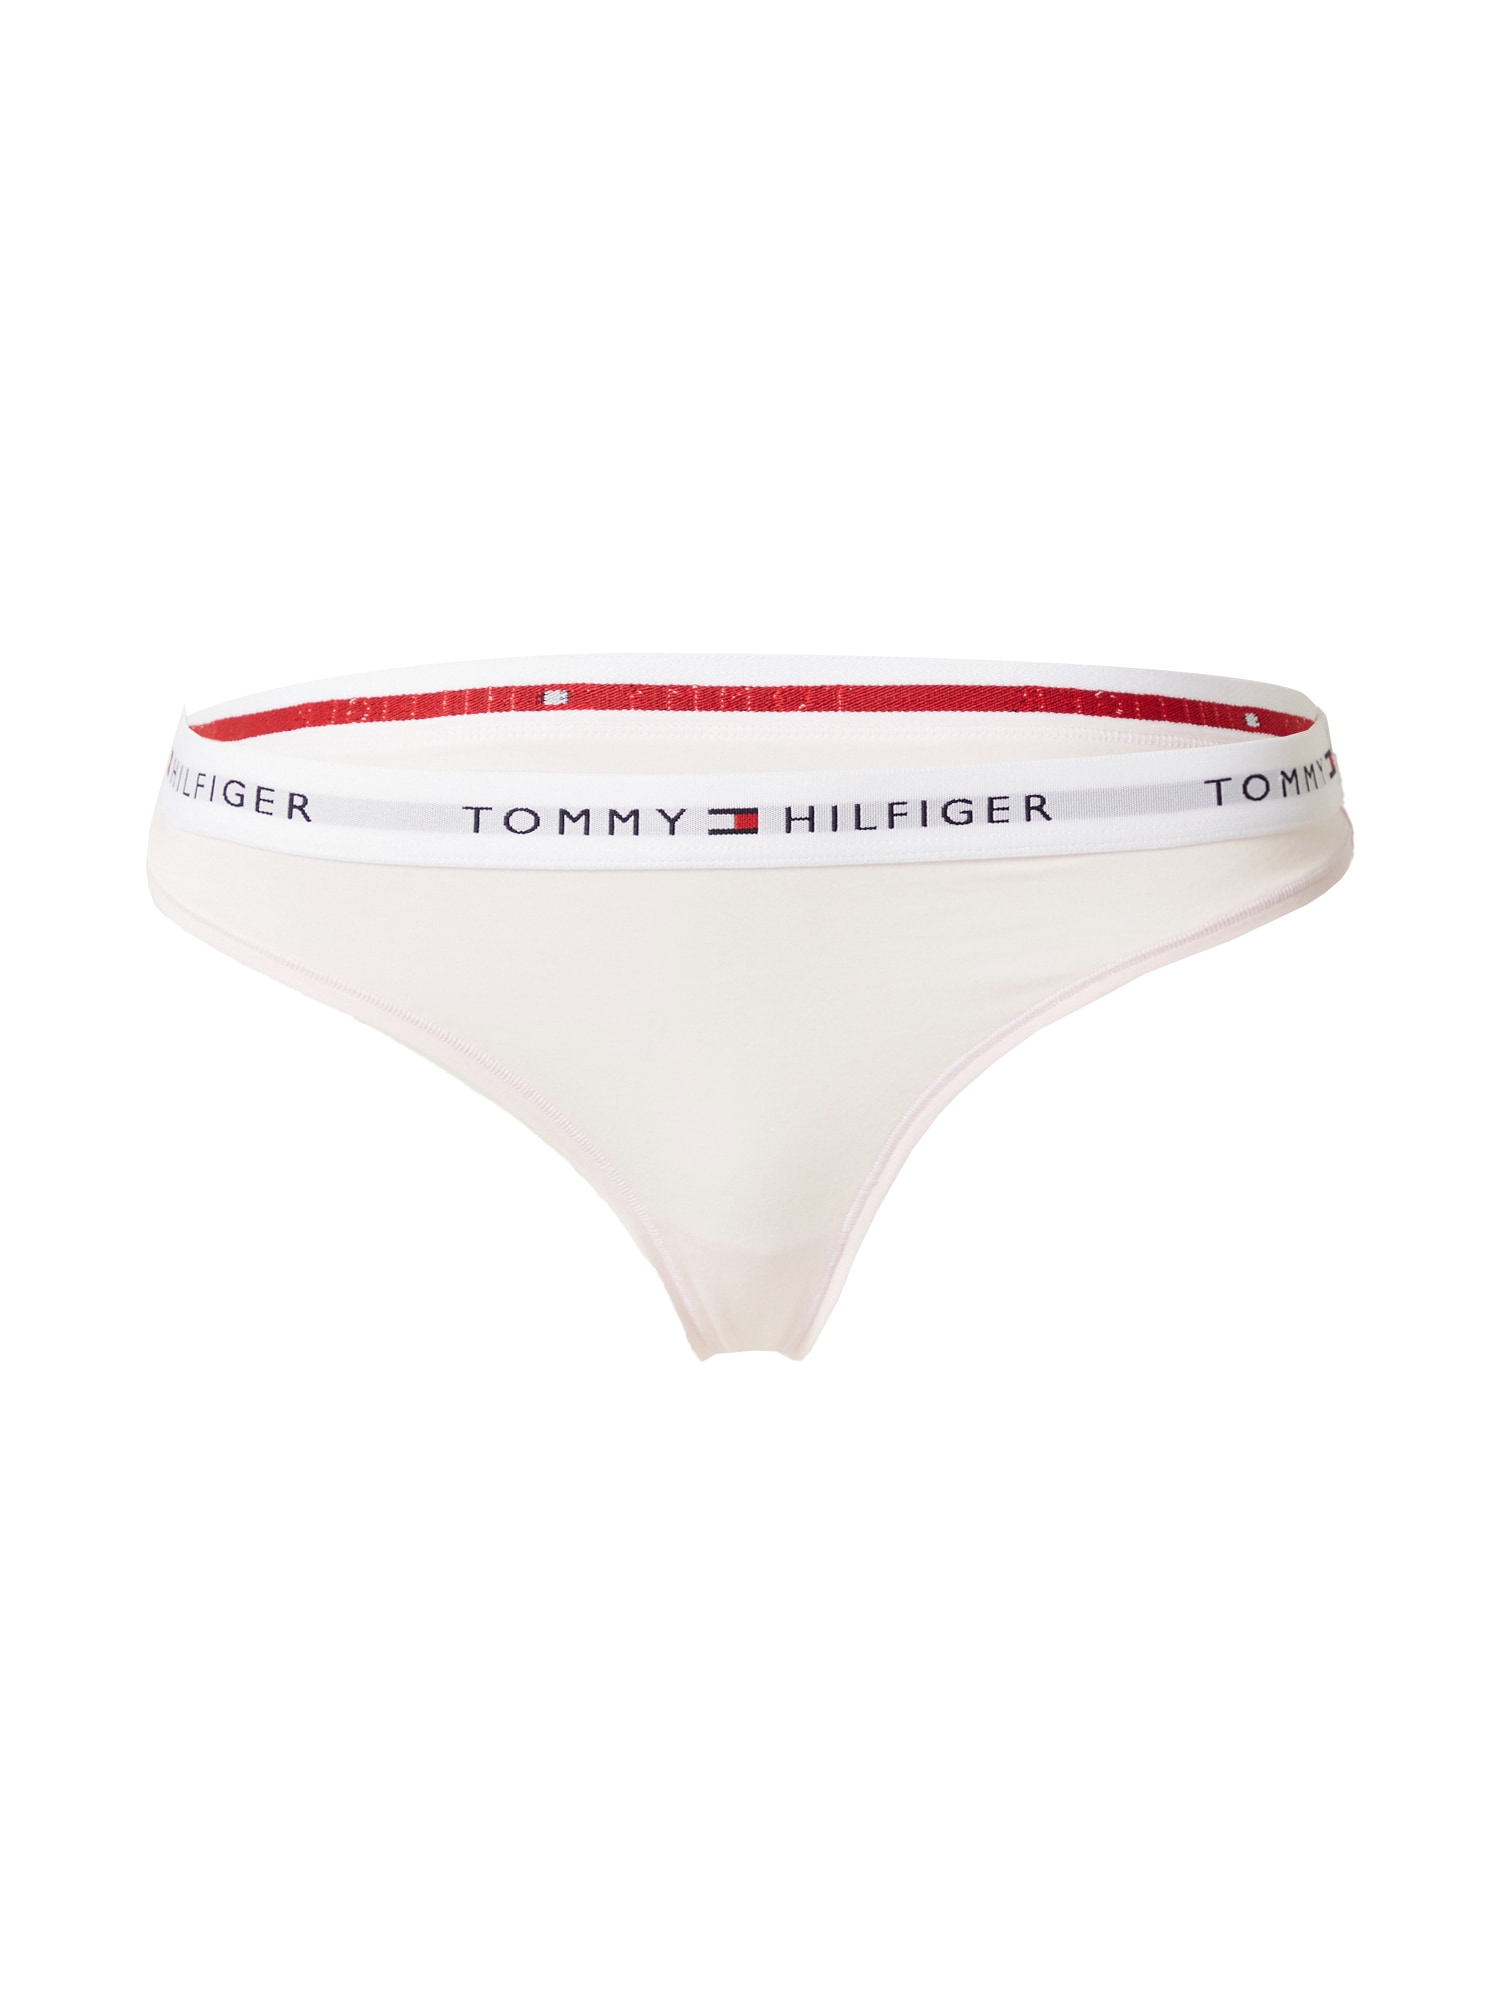 Tommy Hilfiger Underwear Siaurikės tamsiai mėlyna jūros spalva / pastelinė rožinė / raudona / balta